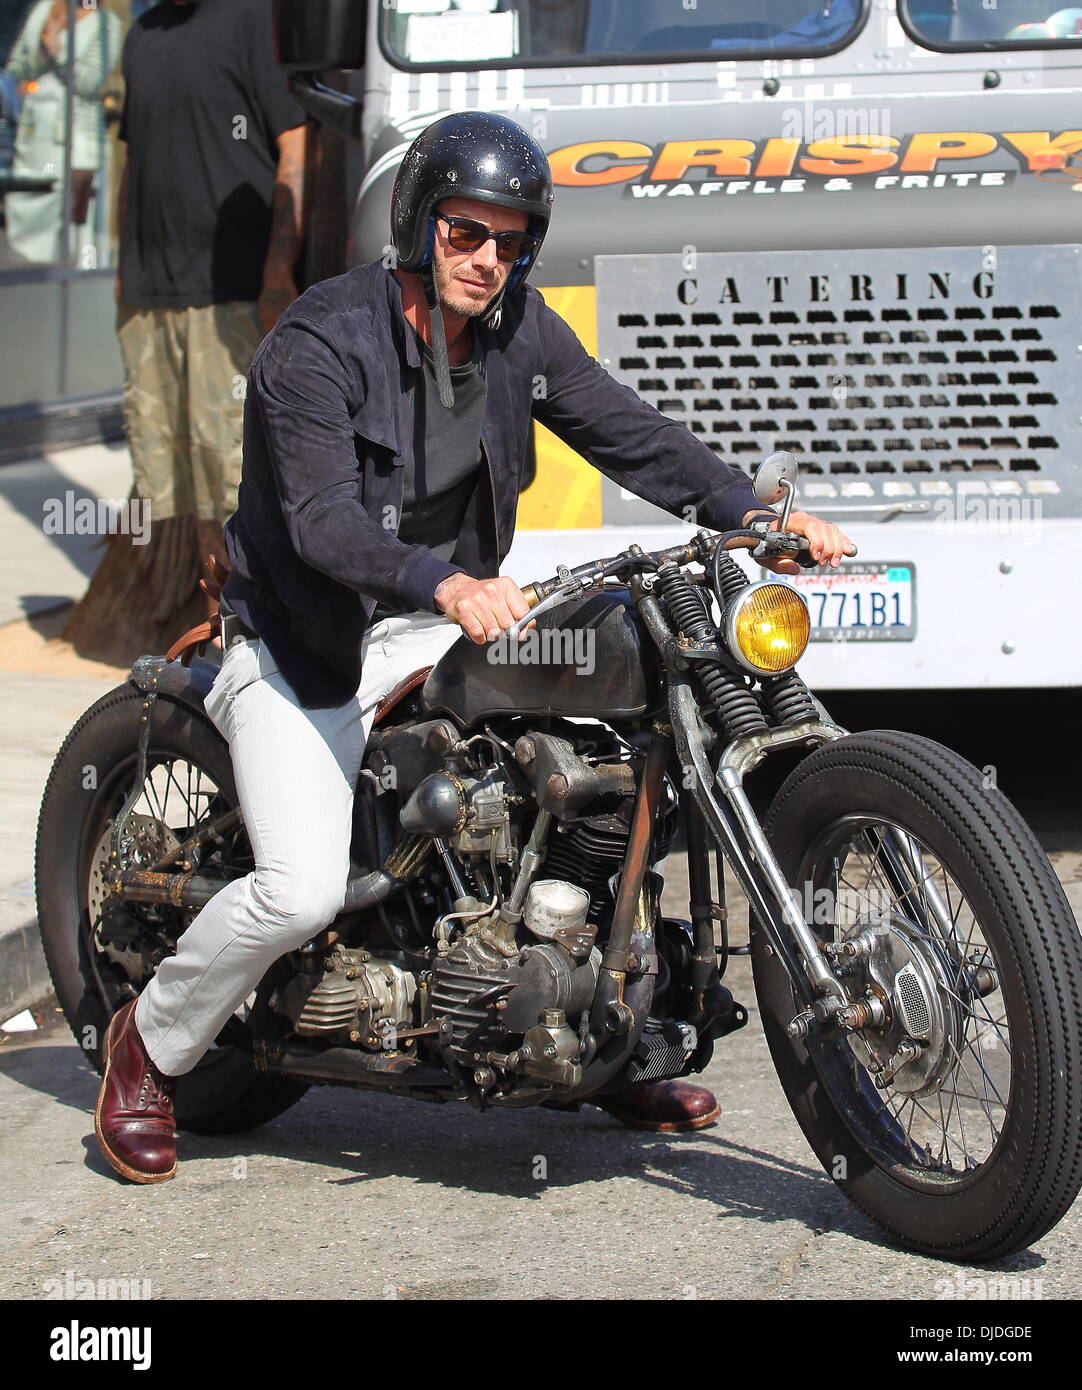 David Beckham kehrt zu seinem geparkten Harley Davidson Motorrad nach  entdeckt bei Gjelina in Venice Beach Los Angeles, Kalifornien - 03.08.12  Stockfotografie - Alamy